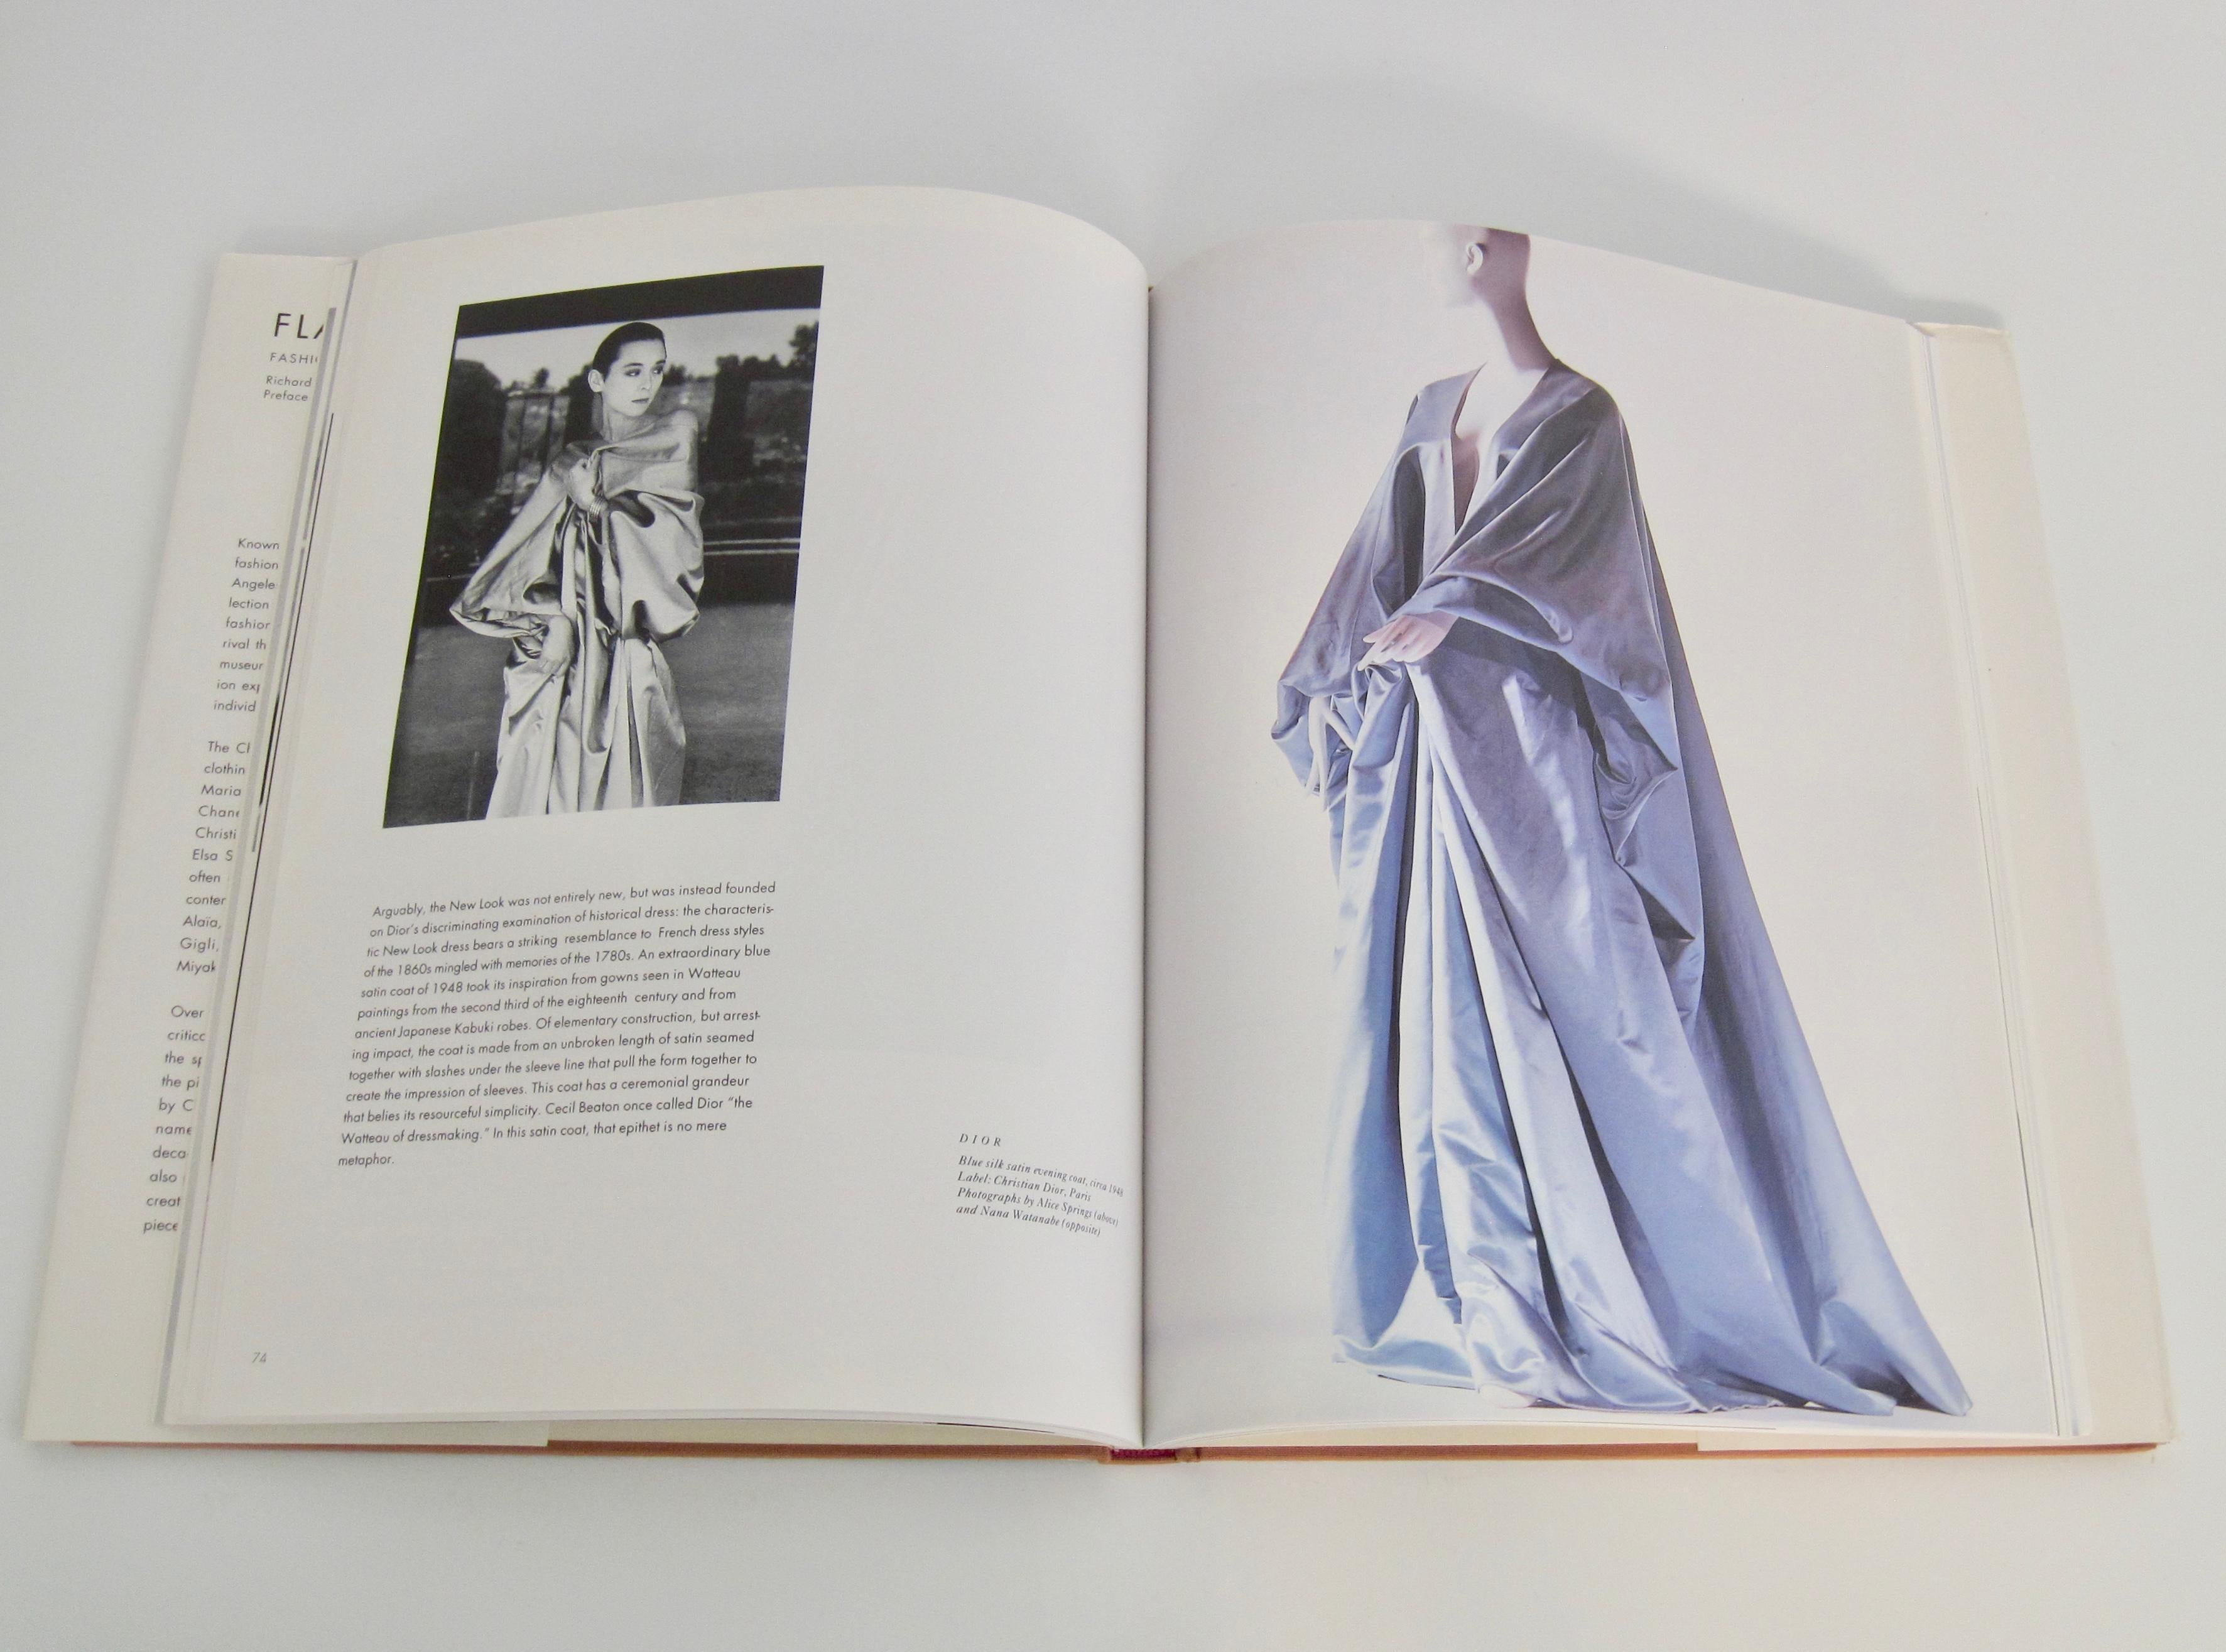 Flair: Fashion Collected by Tina Chow, Buch von Richard Martin und Harold Koda (Ende des 20. Jahrhunderts) im Angebot